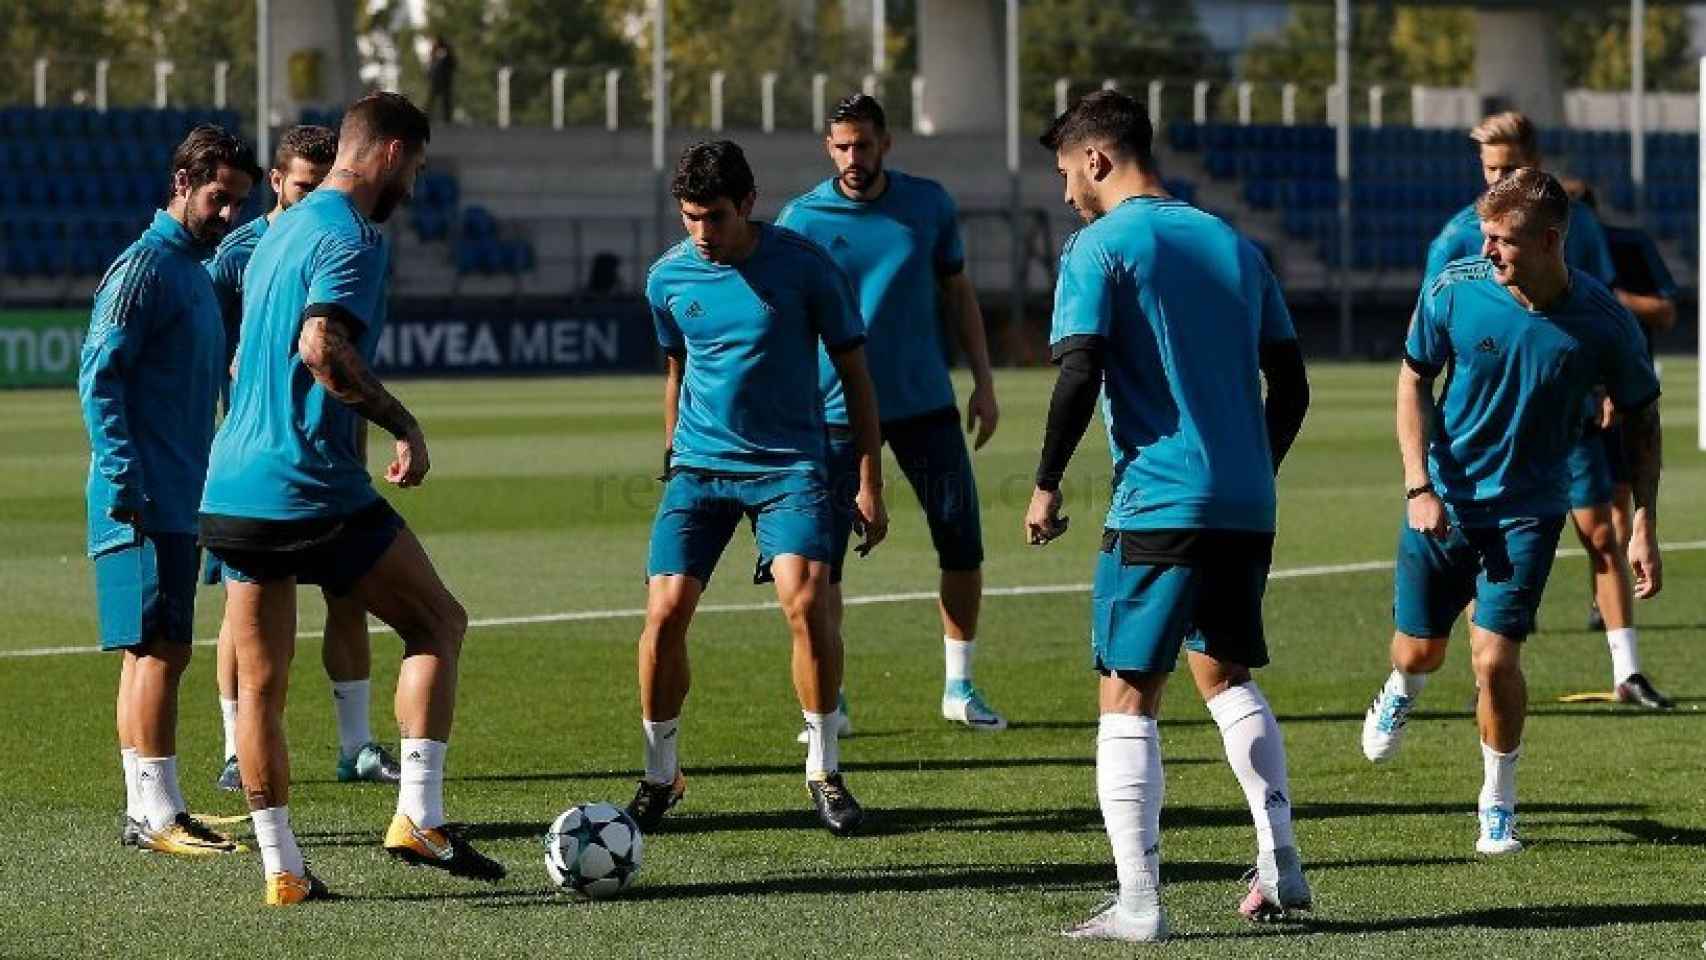 El Real Madrid se entrena antes de recibir al APOEL